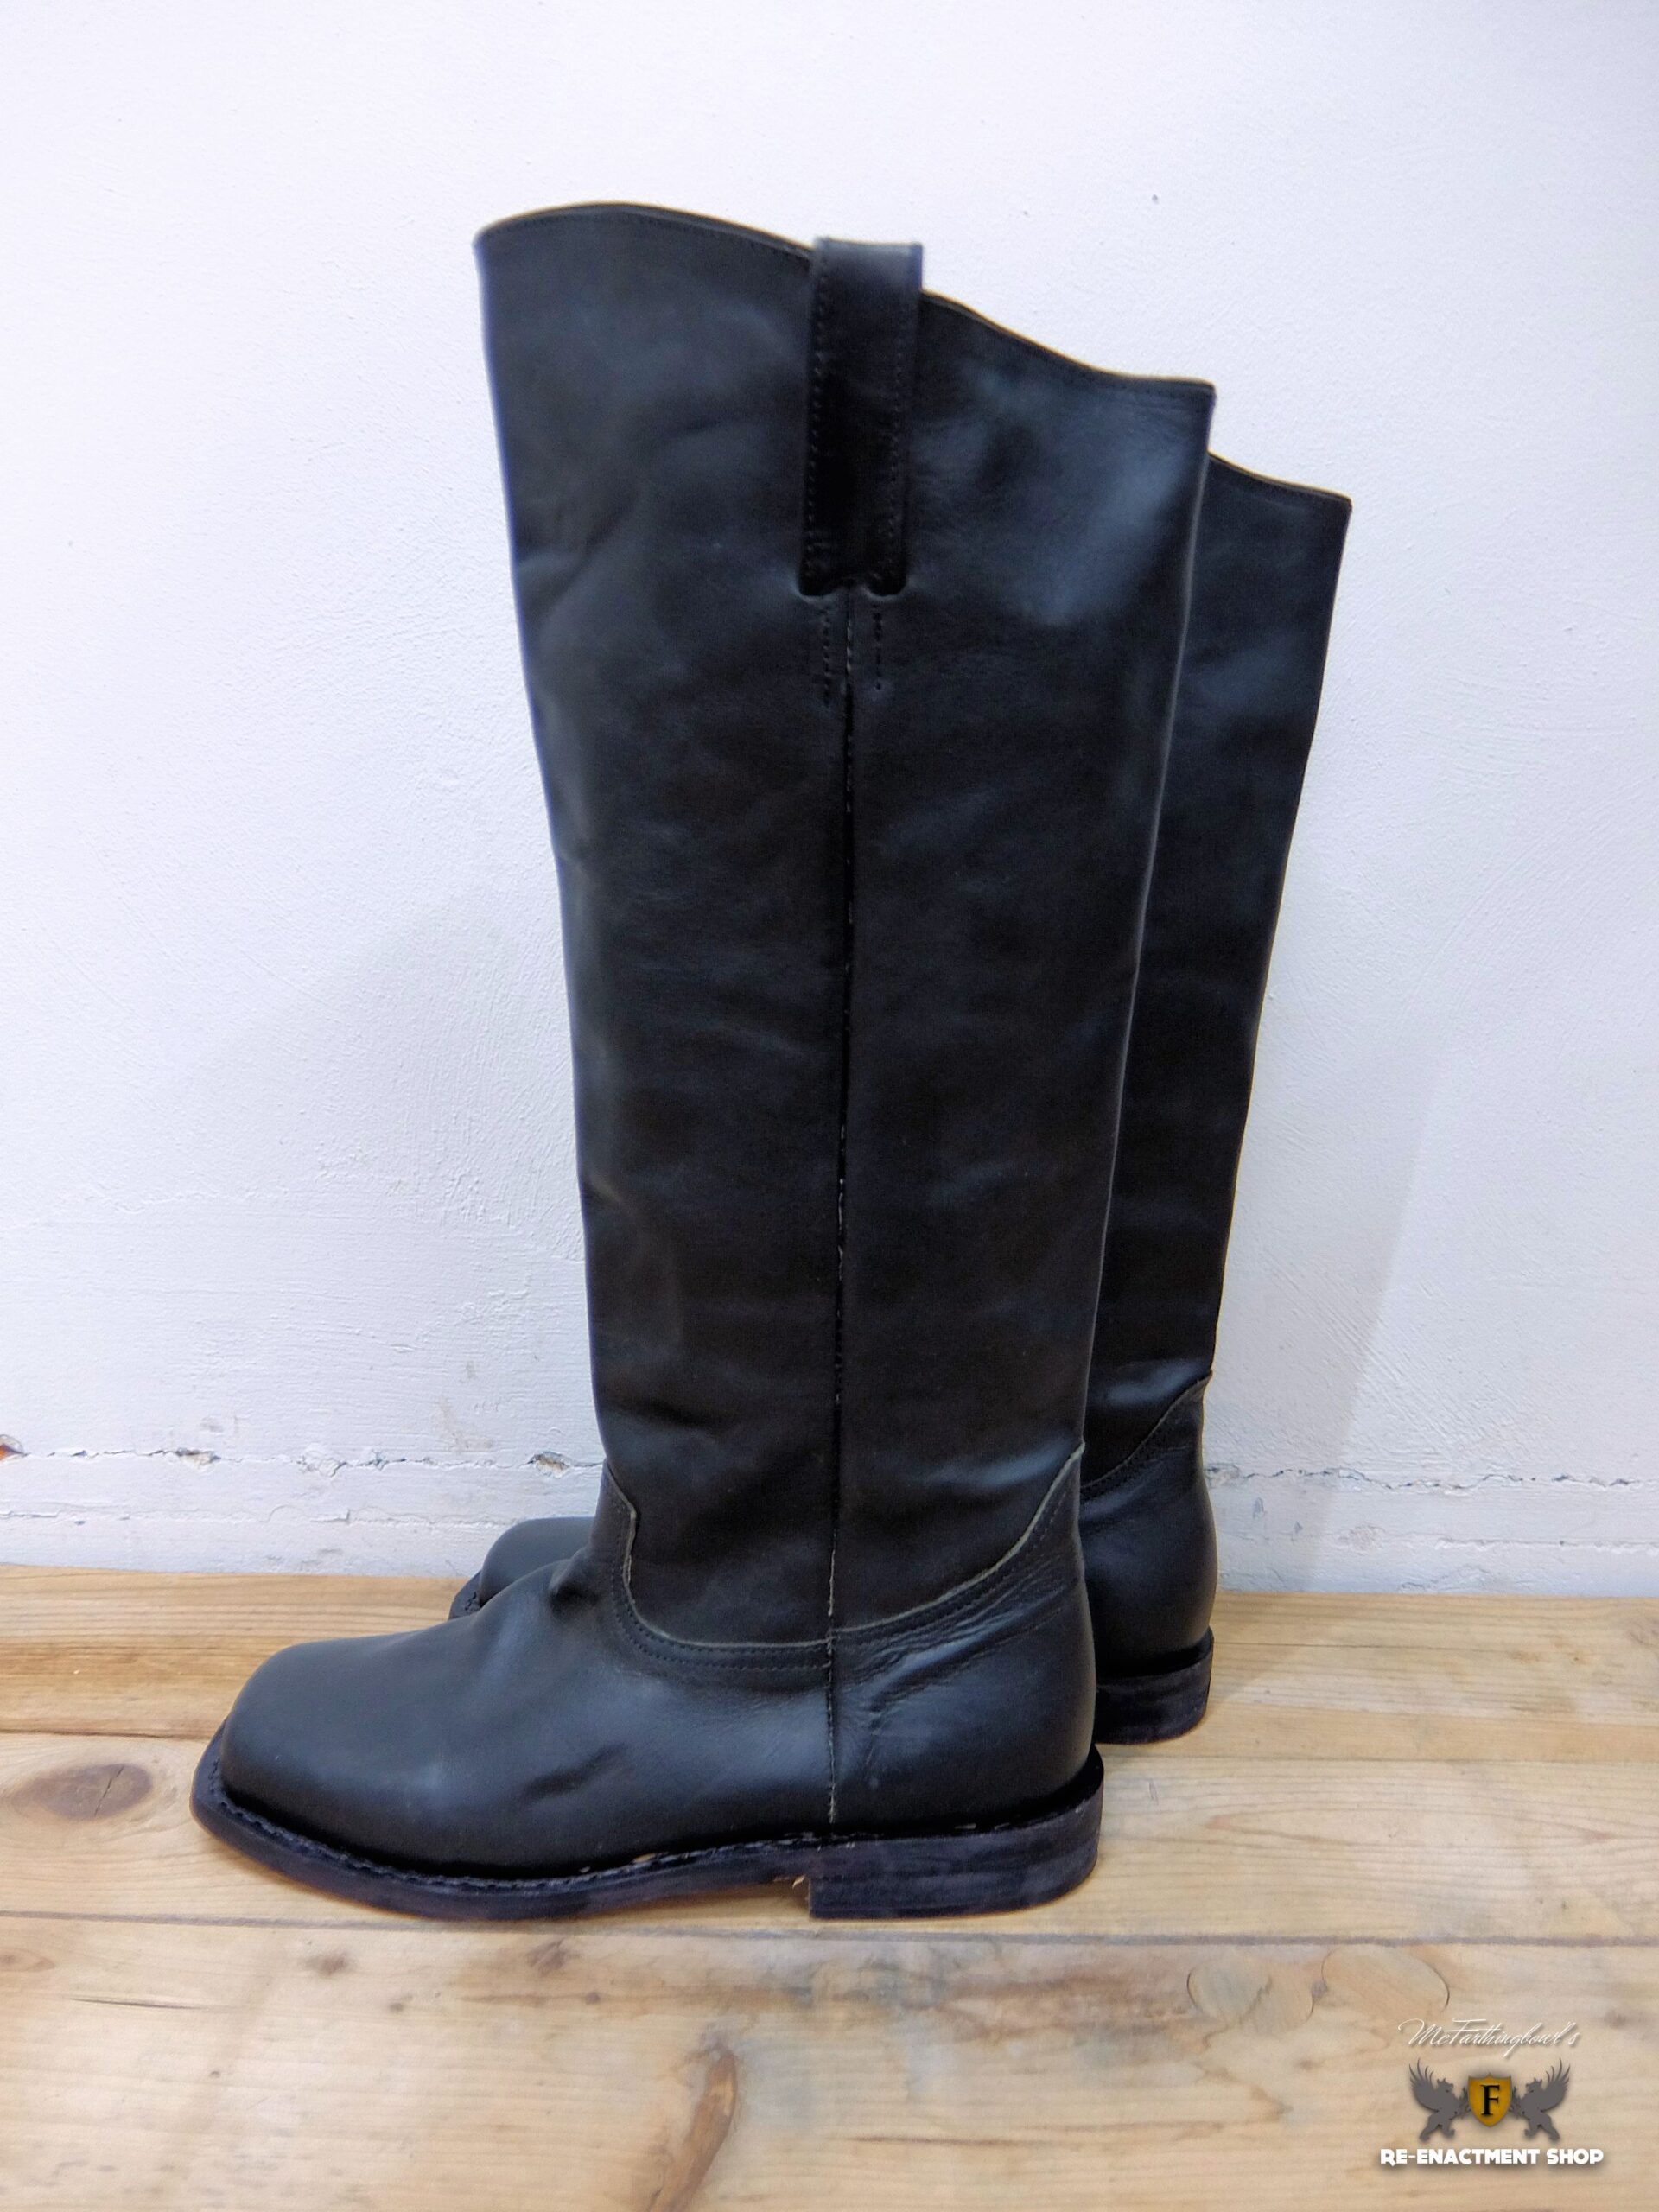 Black leather boots - Re-enactment Shop